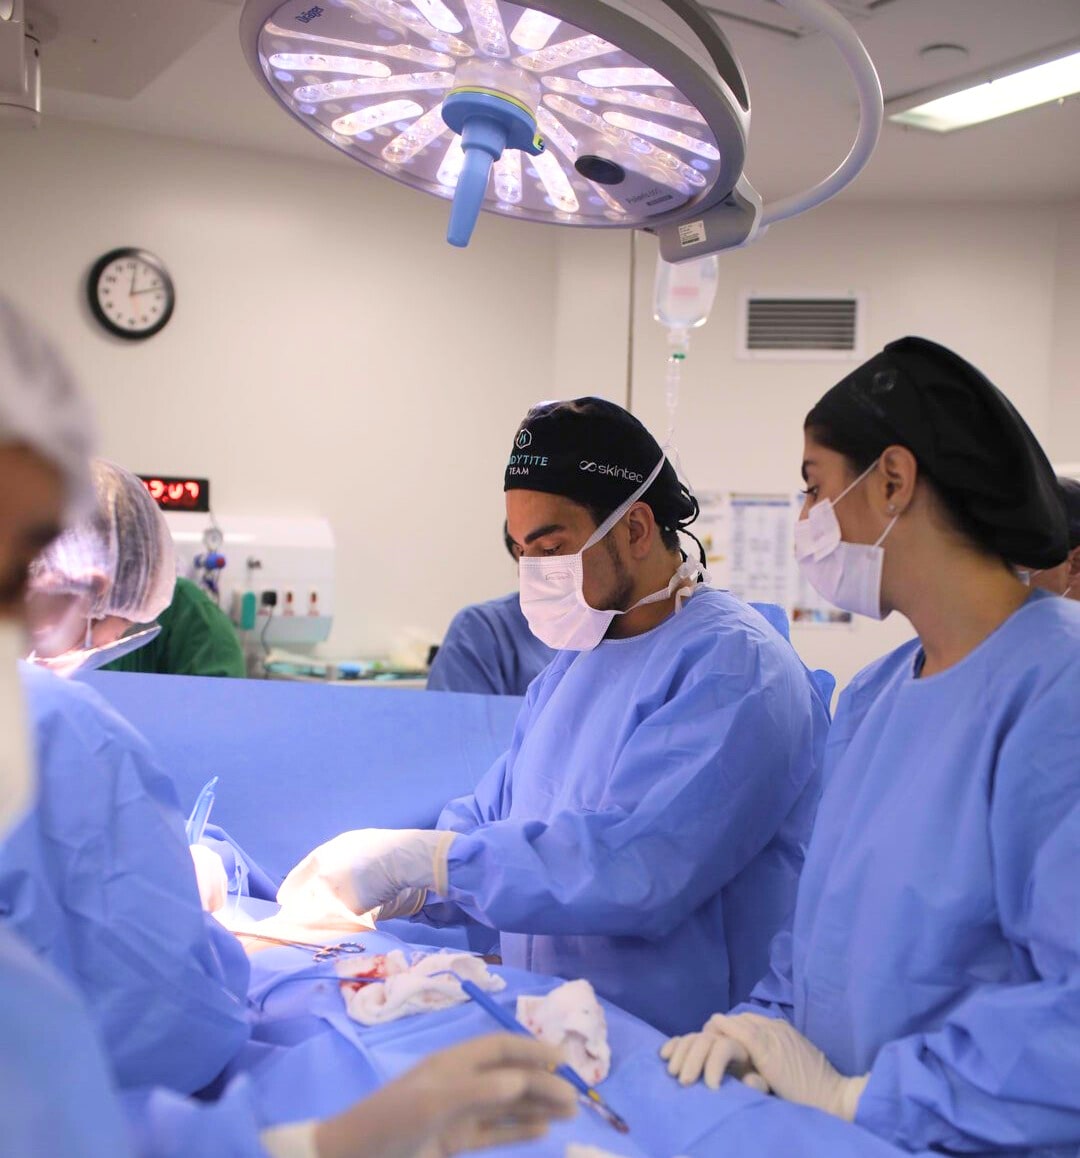 equipe de cirurgia plastica no rio de janeiro no centro cirurgico operando 3